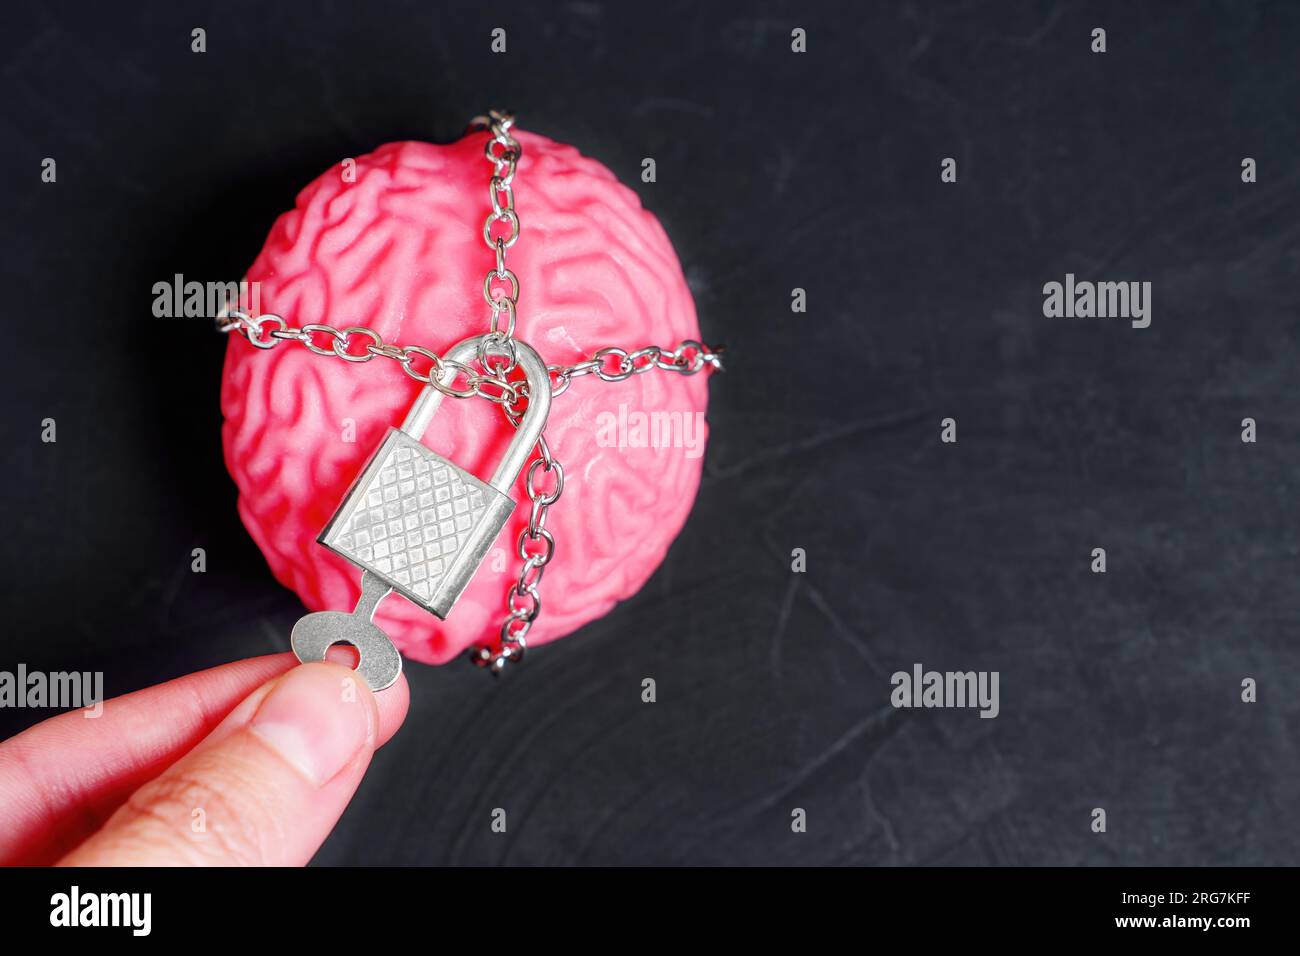 Cervello umano avvolto in catene e fissato con un lucchetto. La mano utilizza una chiave sul lucchetto. Foto Stock